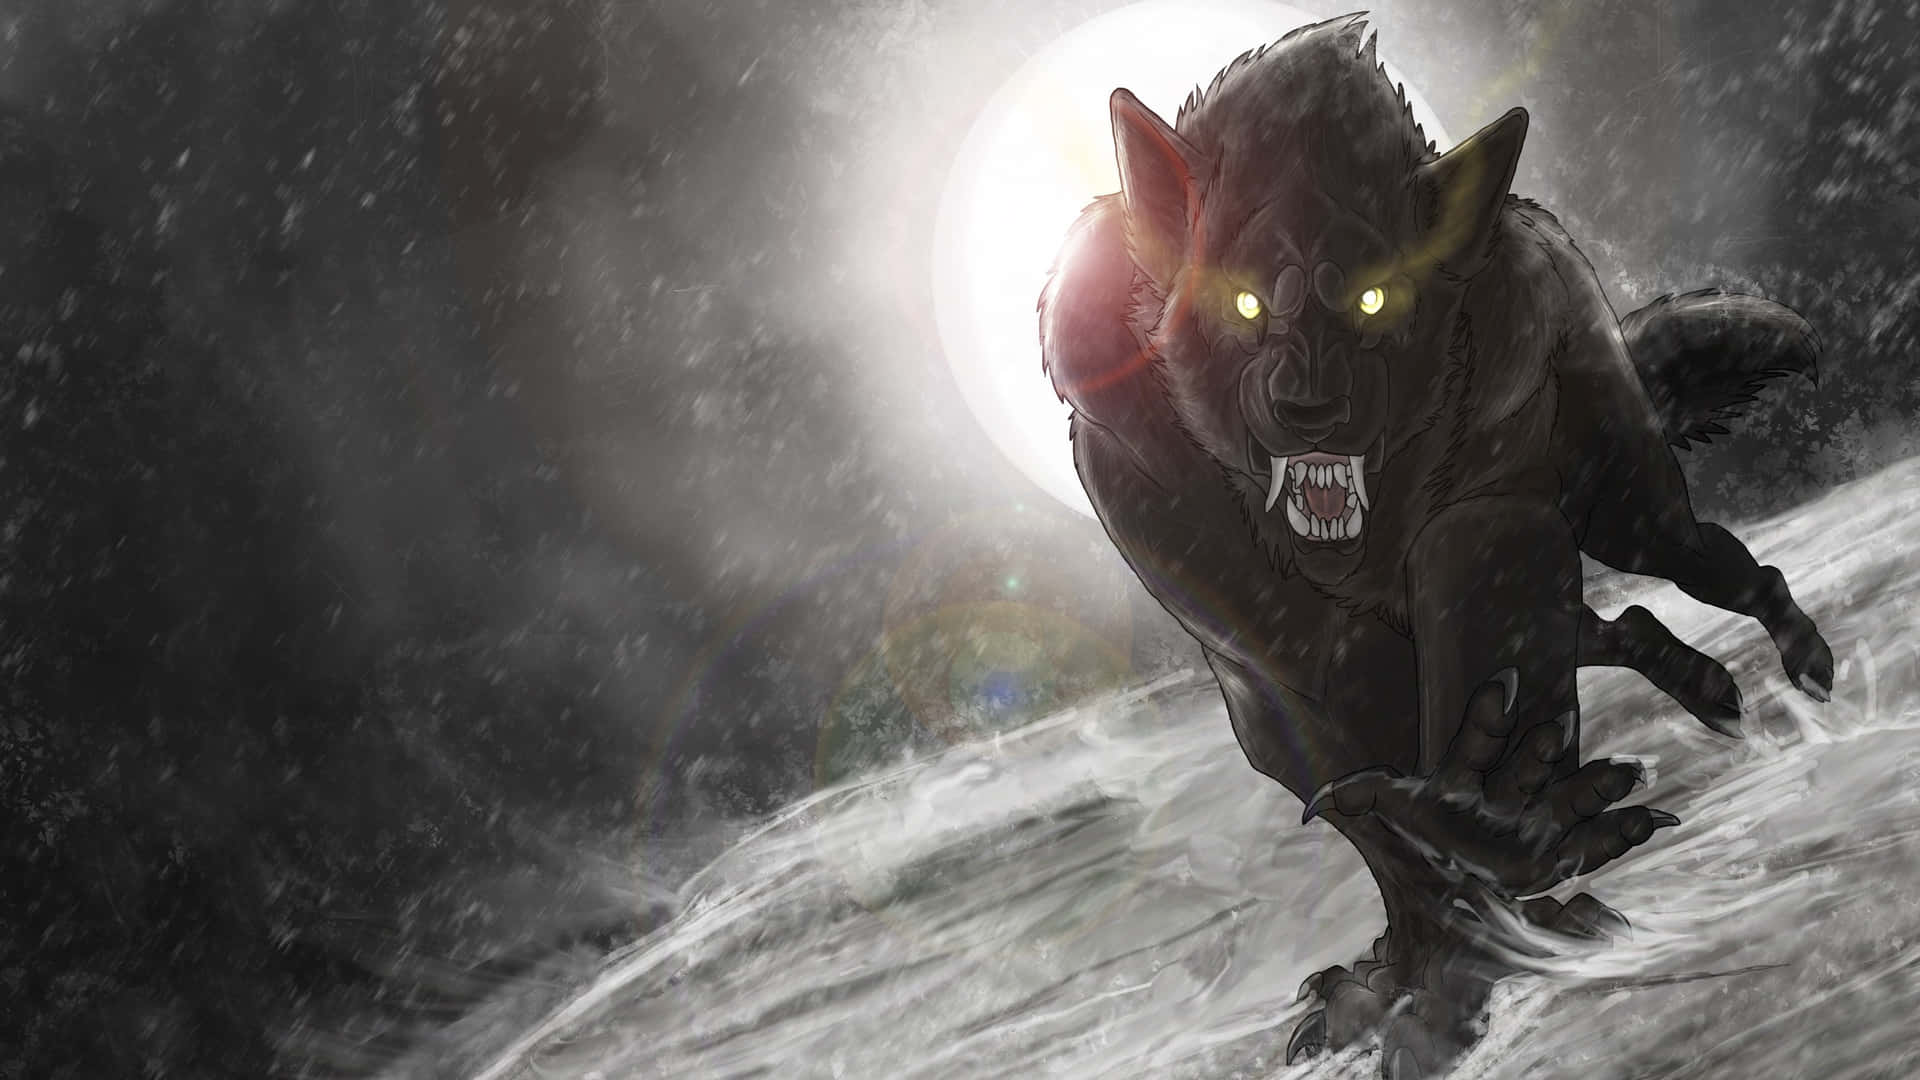 The Wild, Untamed Werewolf